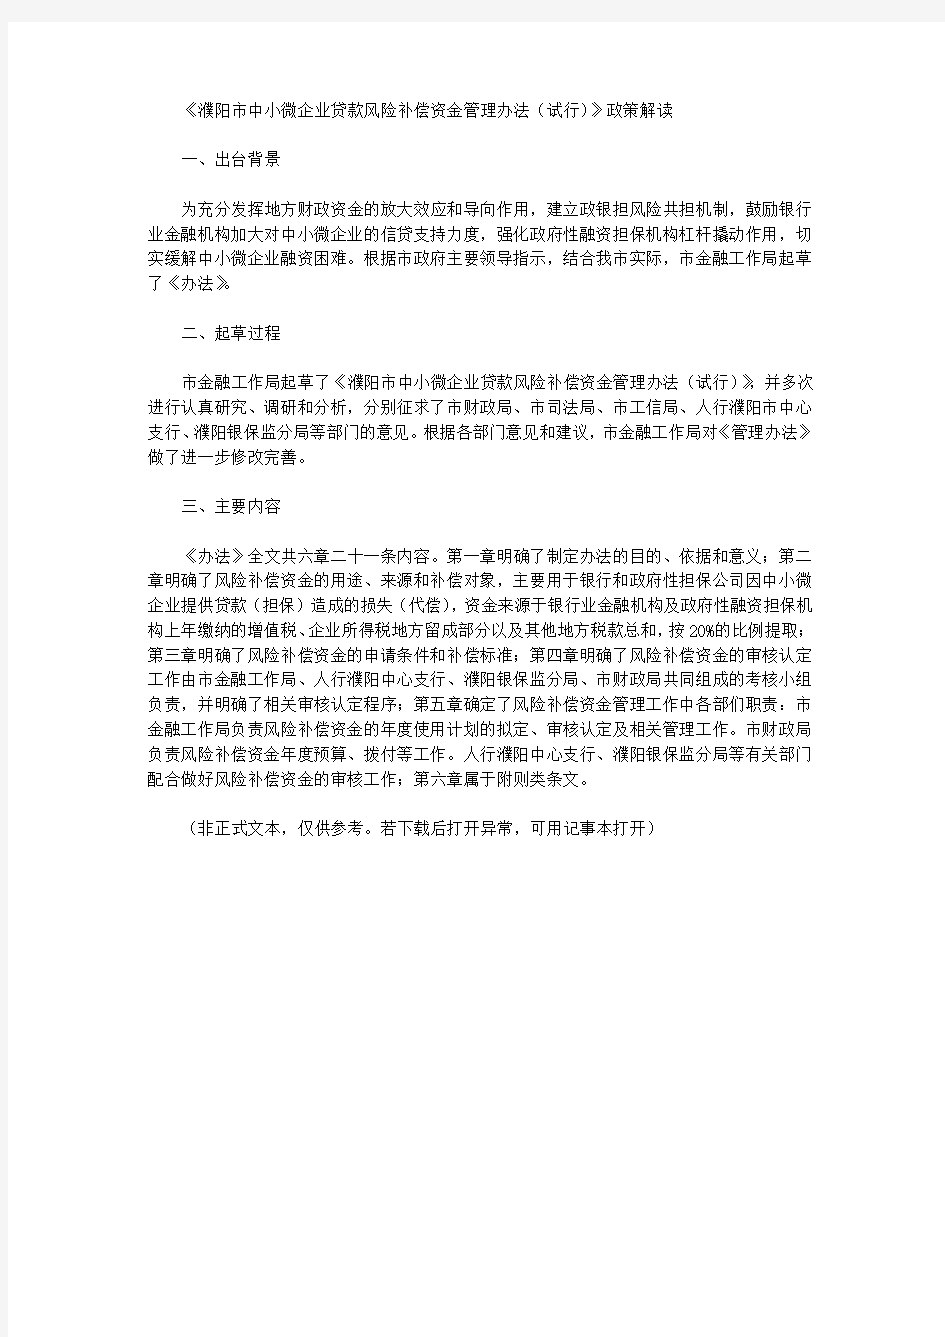 《濮阳市中小微企业贷款风险补偿资金管理办法(试行)》政策解读